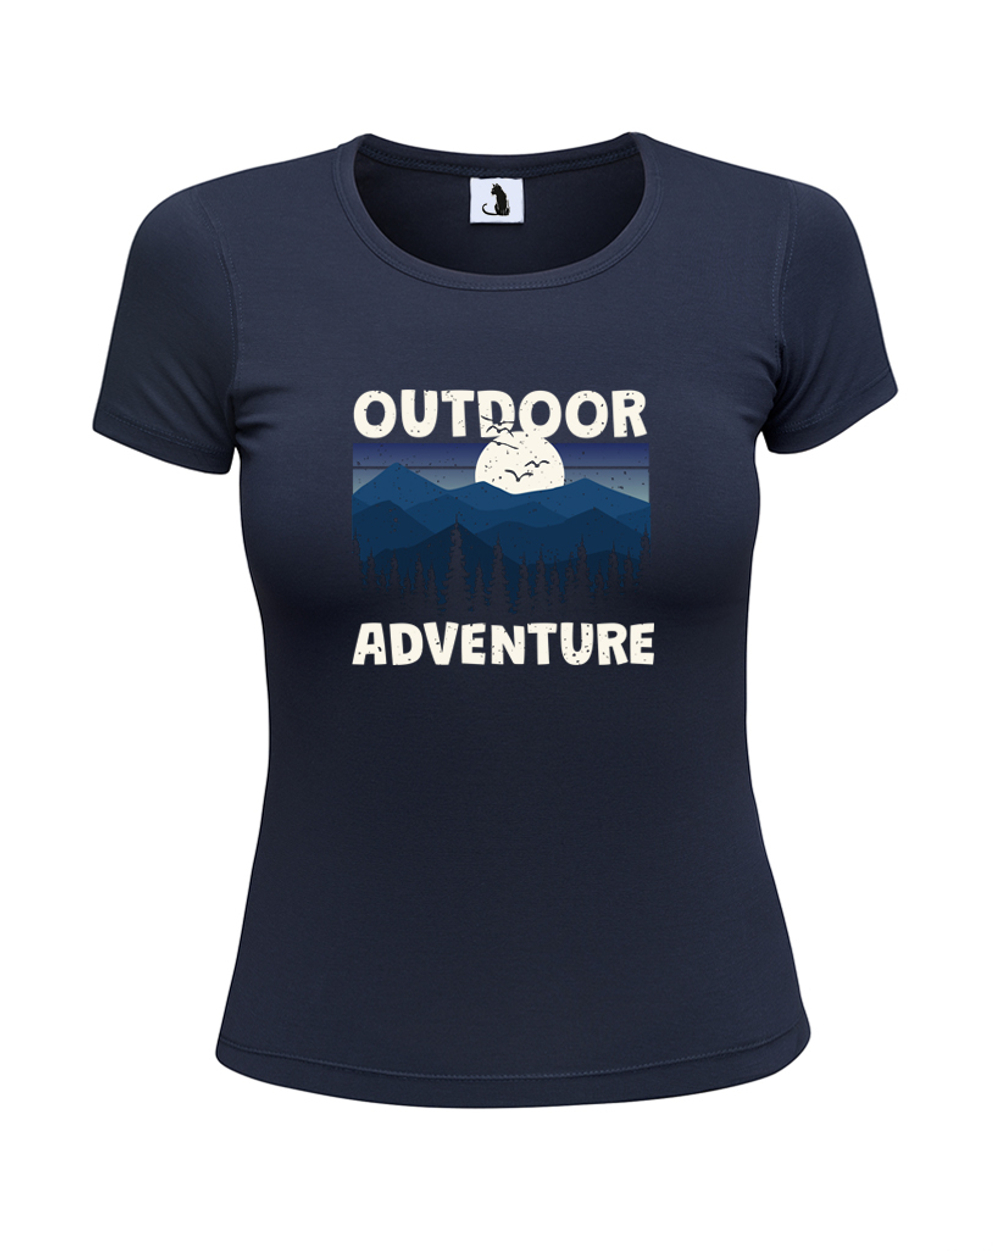 Футболка Outdoor adventure женская приталенная темно-синяя